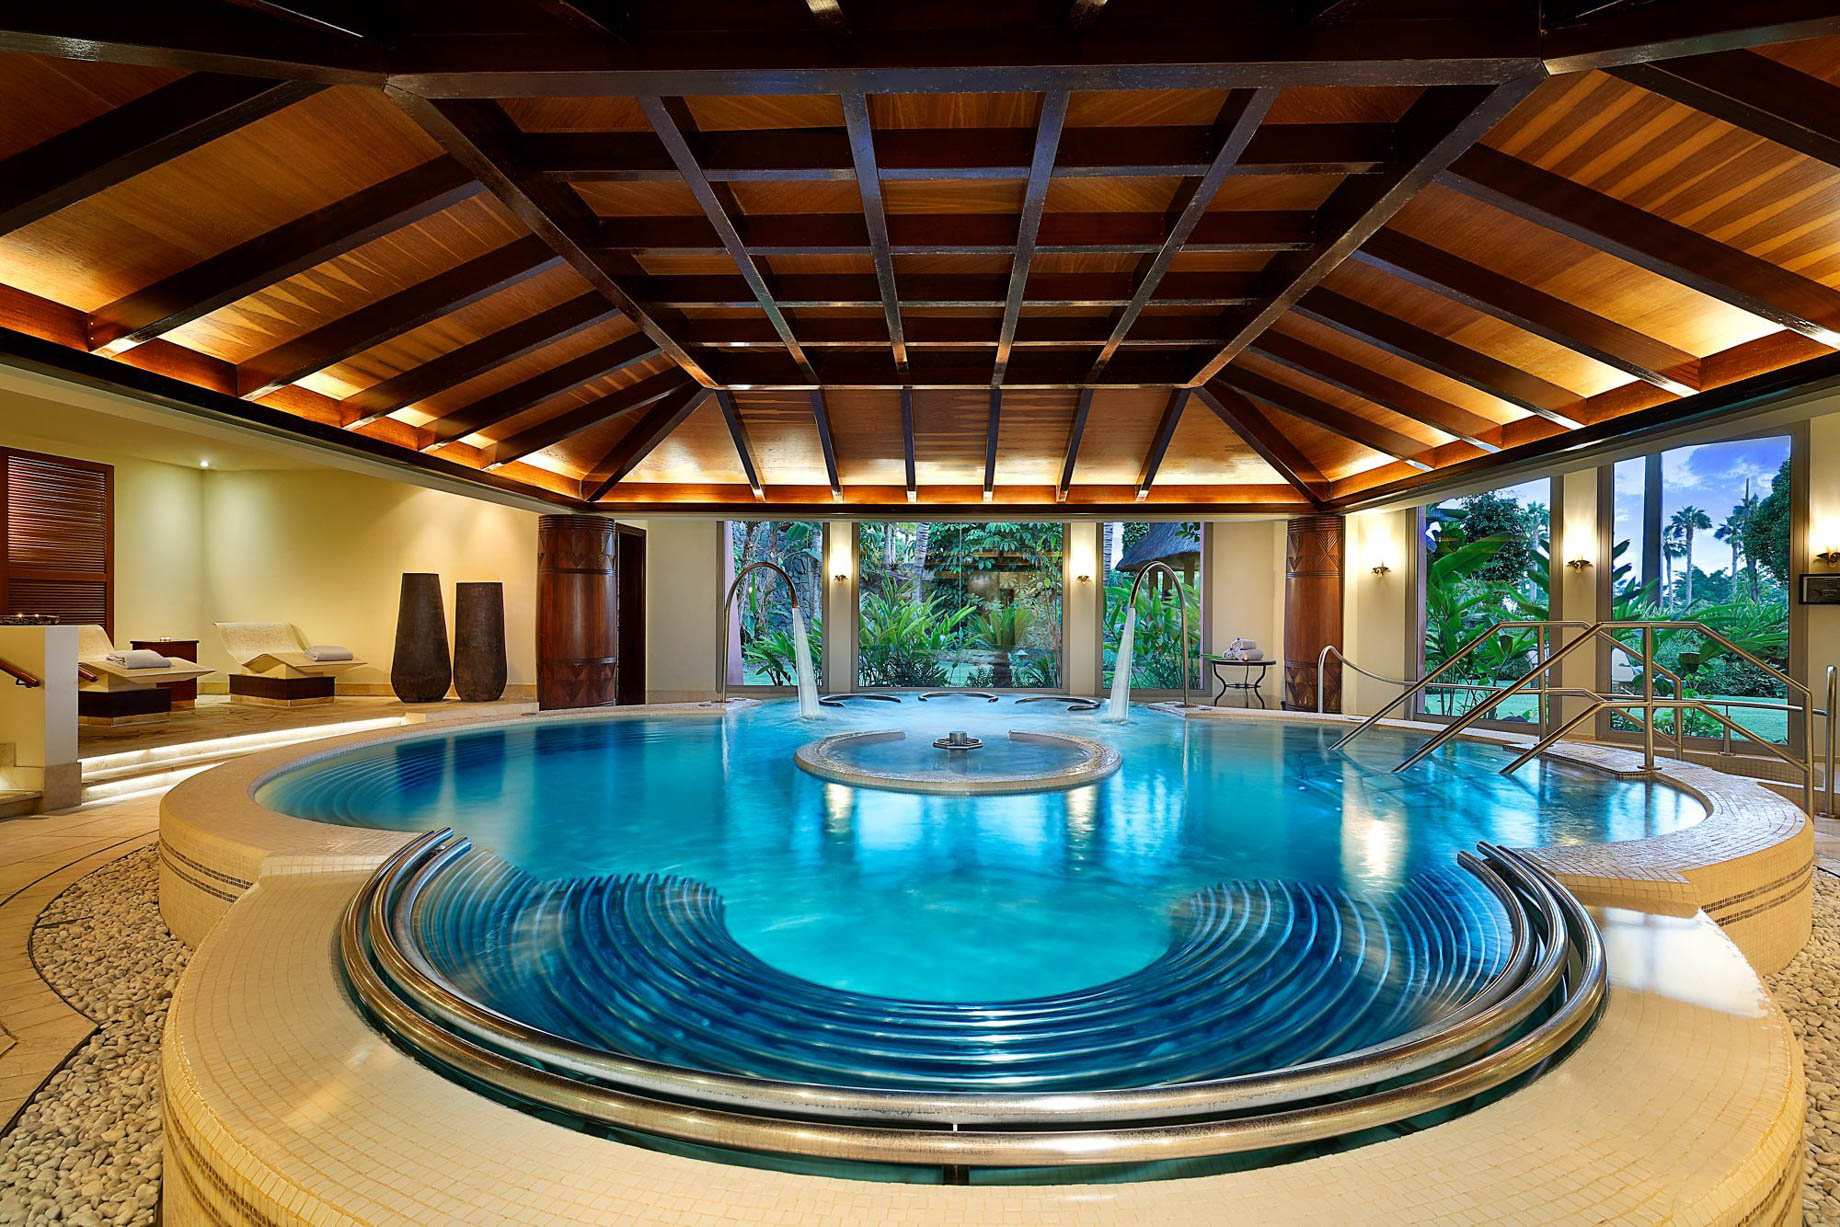 The Ritz-Carlton, Abama Resort – Santa Cruz de Tenerife, Spain – Spa Pool